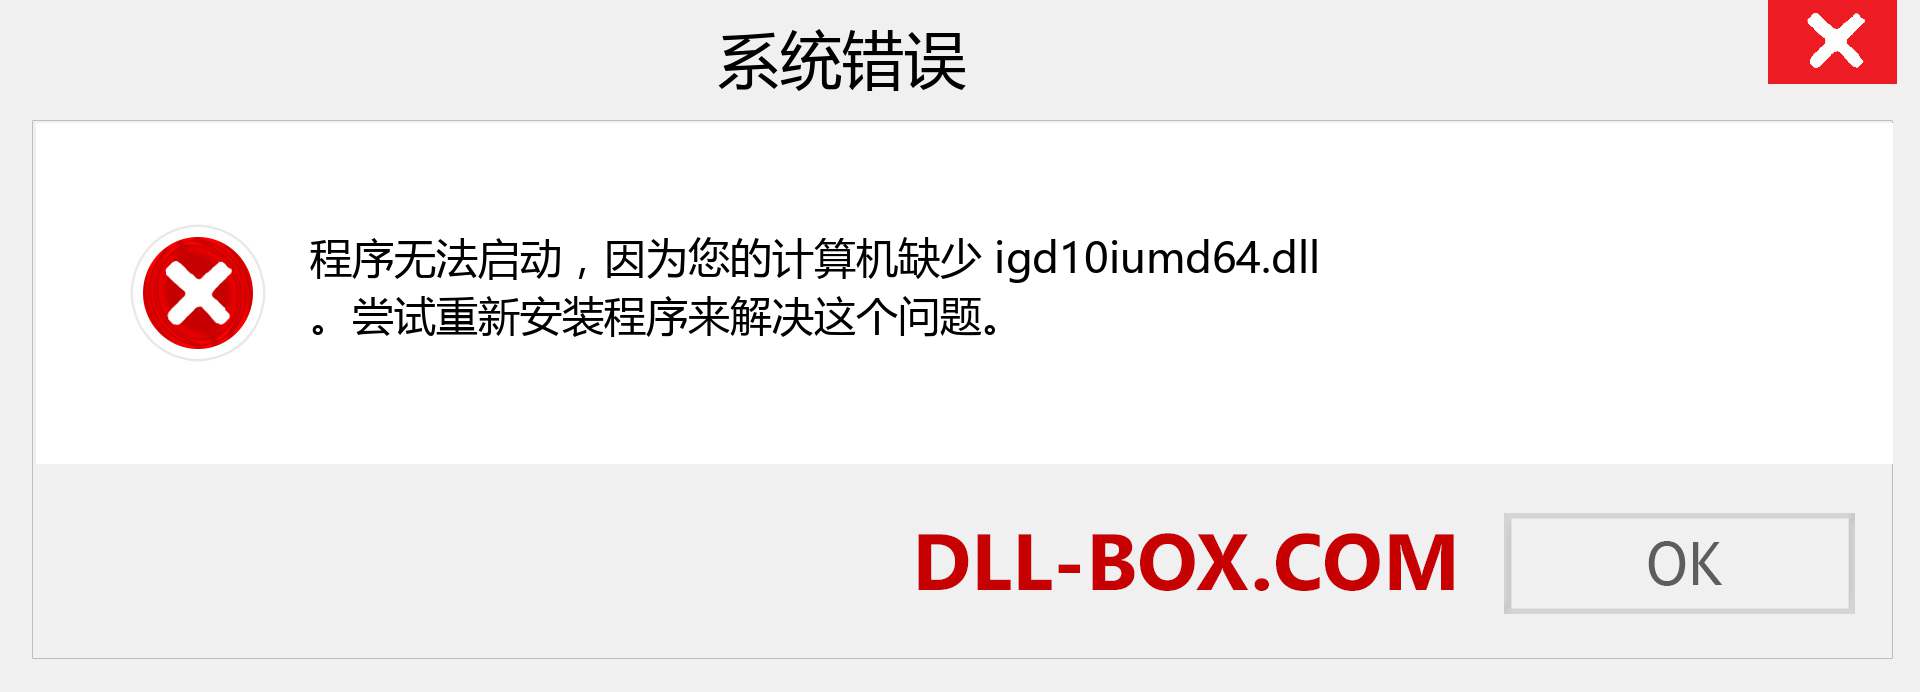 igd10iumd64.dll 文件丢失？。 适用于 Windows 7、8、10 的下载 - 修复 Windows、照片、图像上的 igd10iumd64 dll 丢失错误